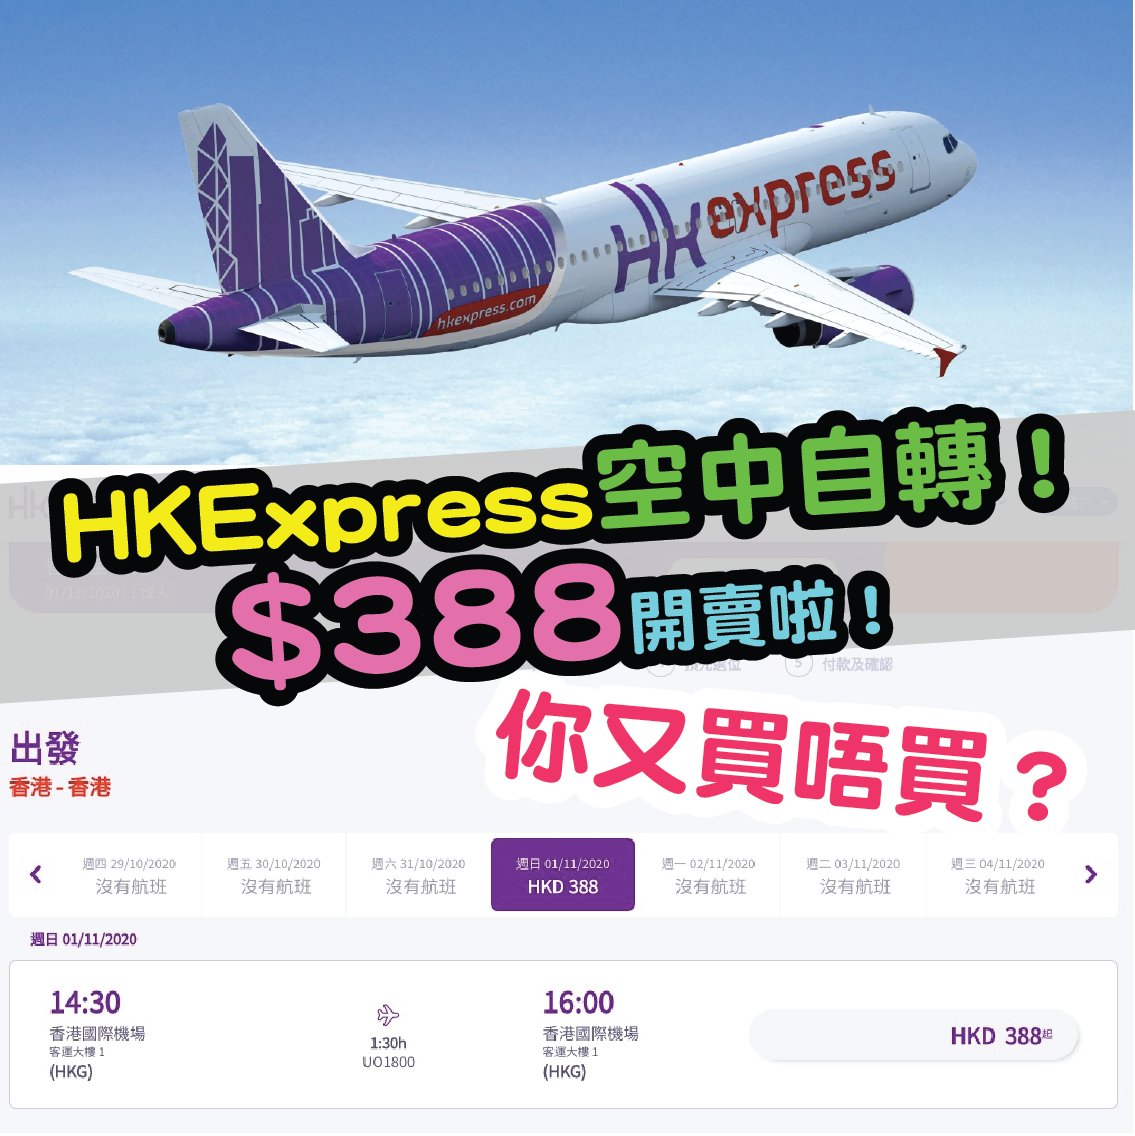 HK Express UOFlycation